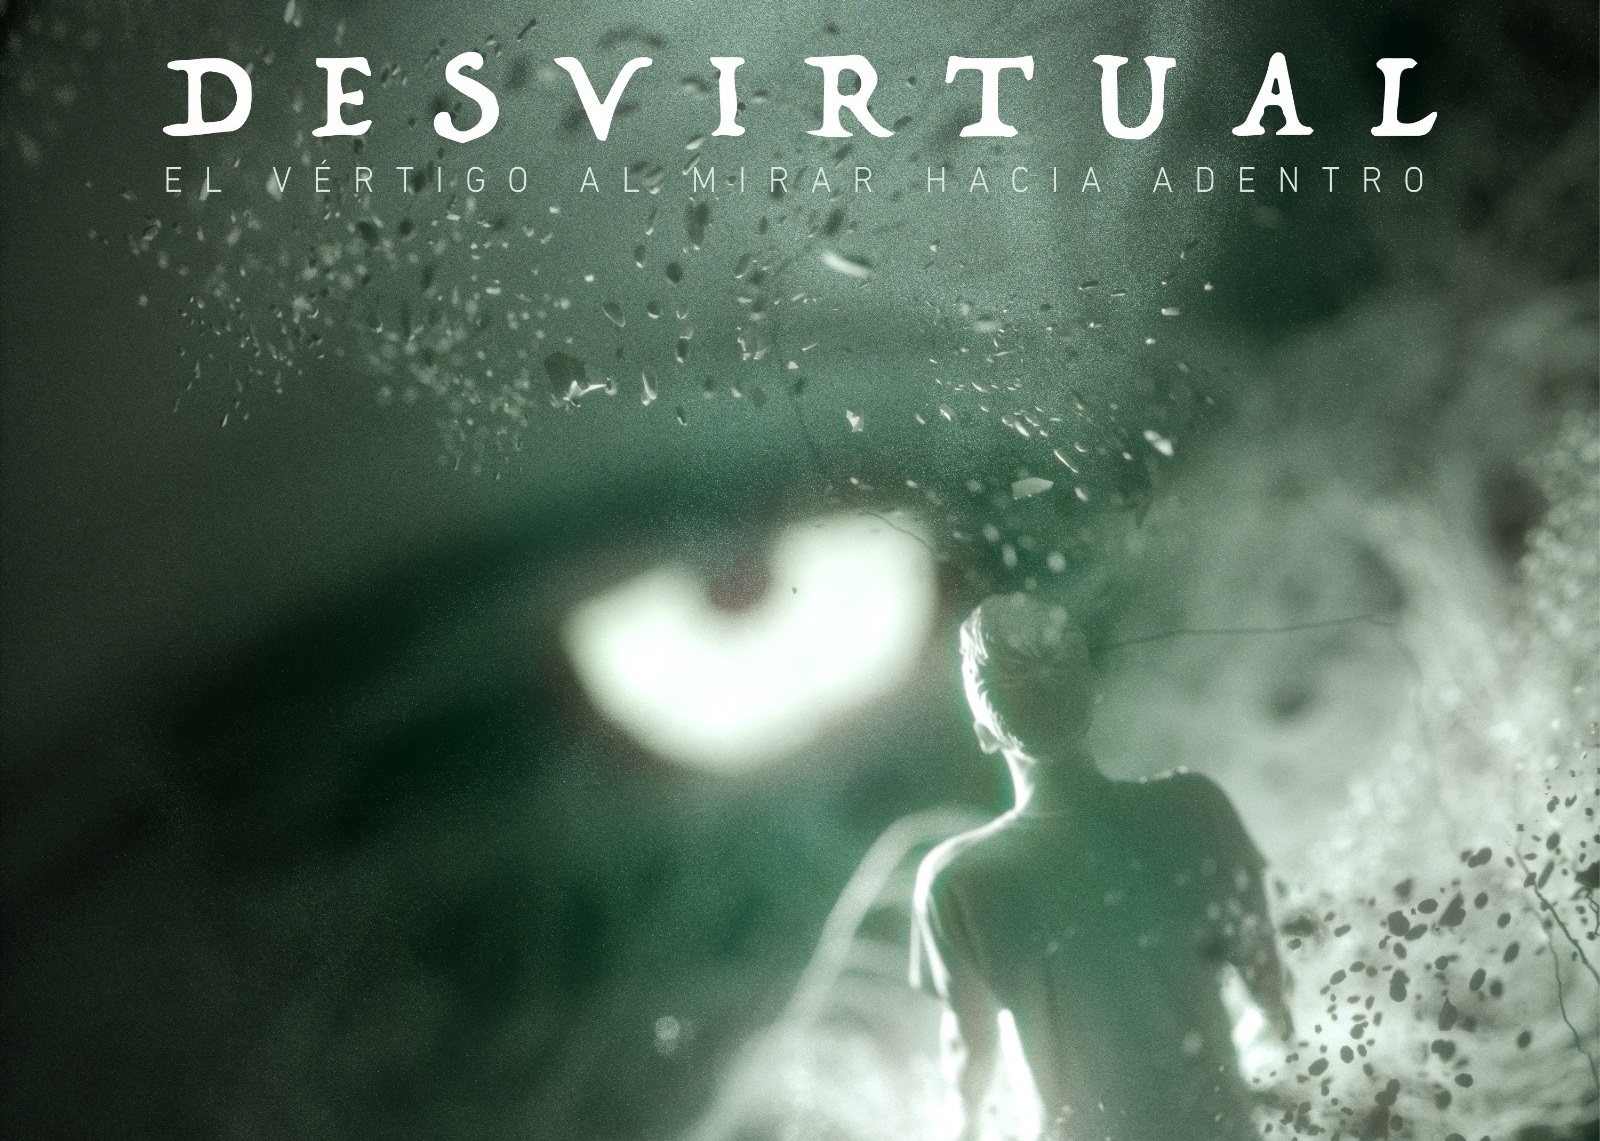 En Colombia, Desvirtual enfrenta los demonios internos en su nuevo disco ‘El vértigo al mirar hacia adentro’